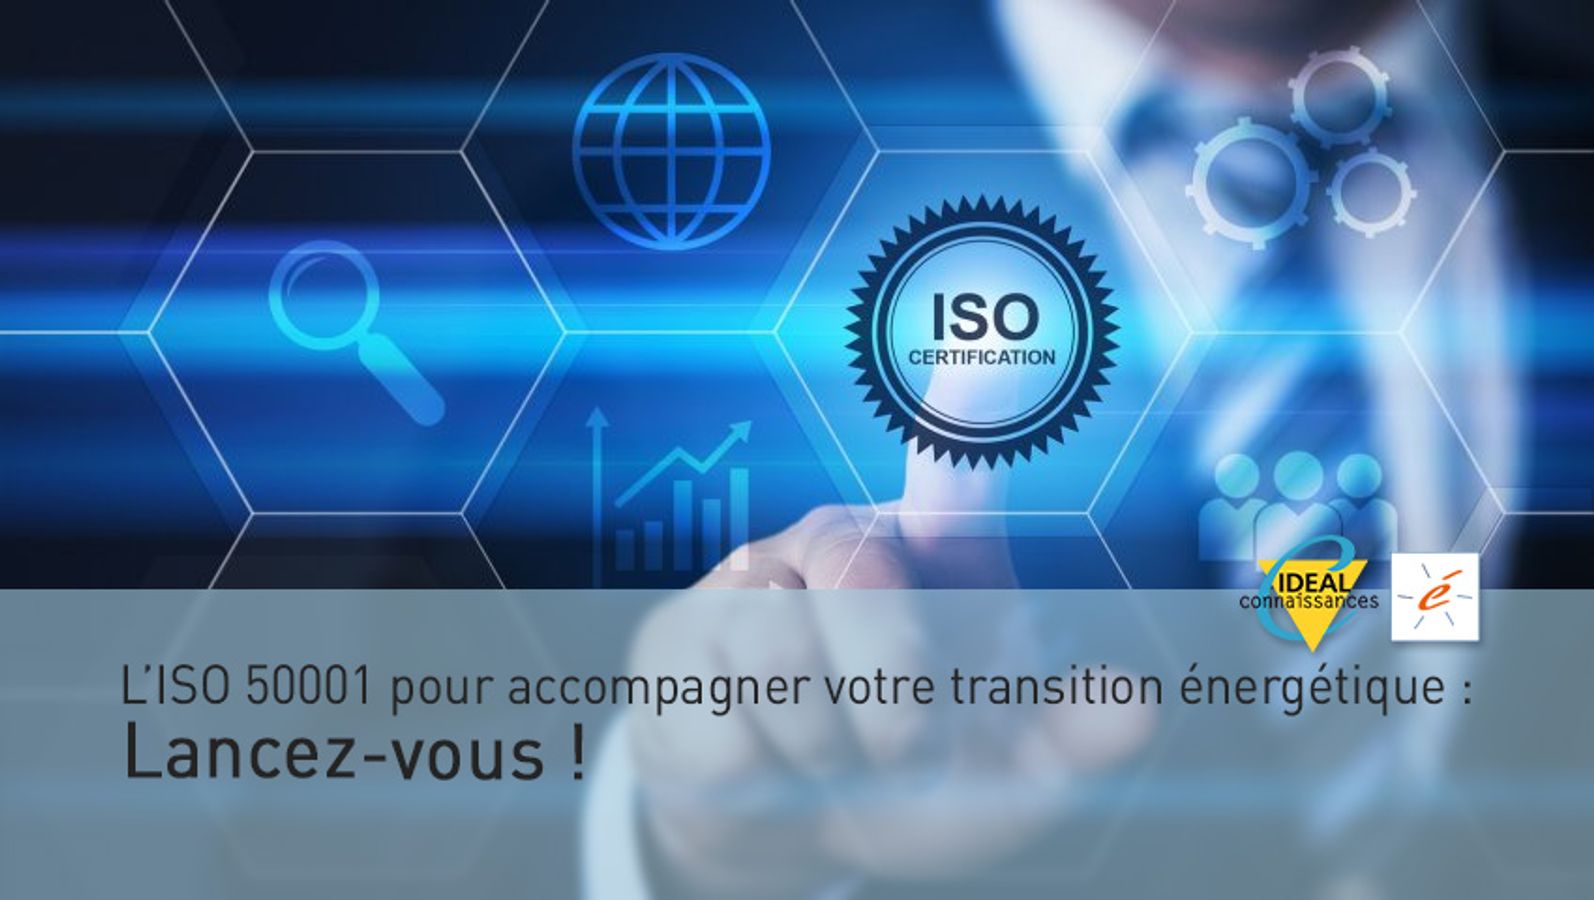 L’ISO 50001 pour accompagner votre transition énergétique : Lancez-vous !